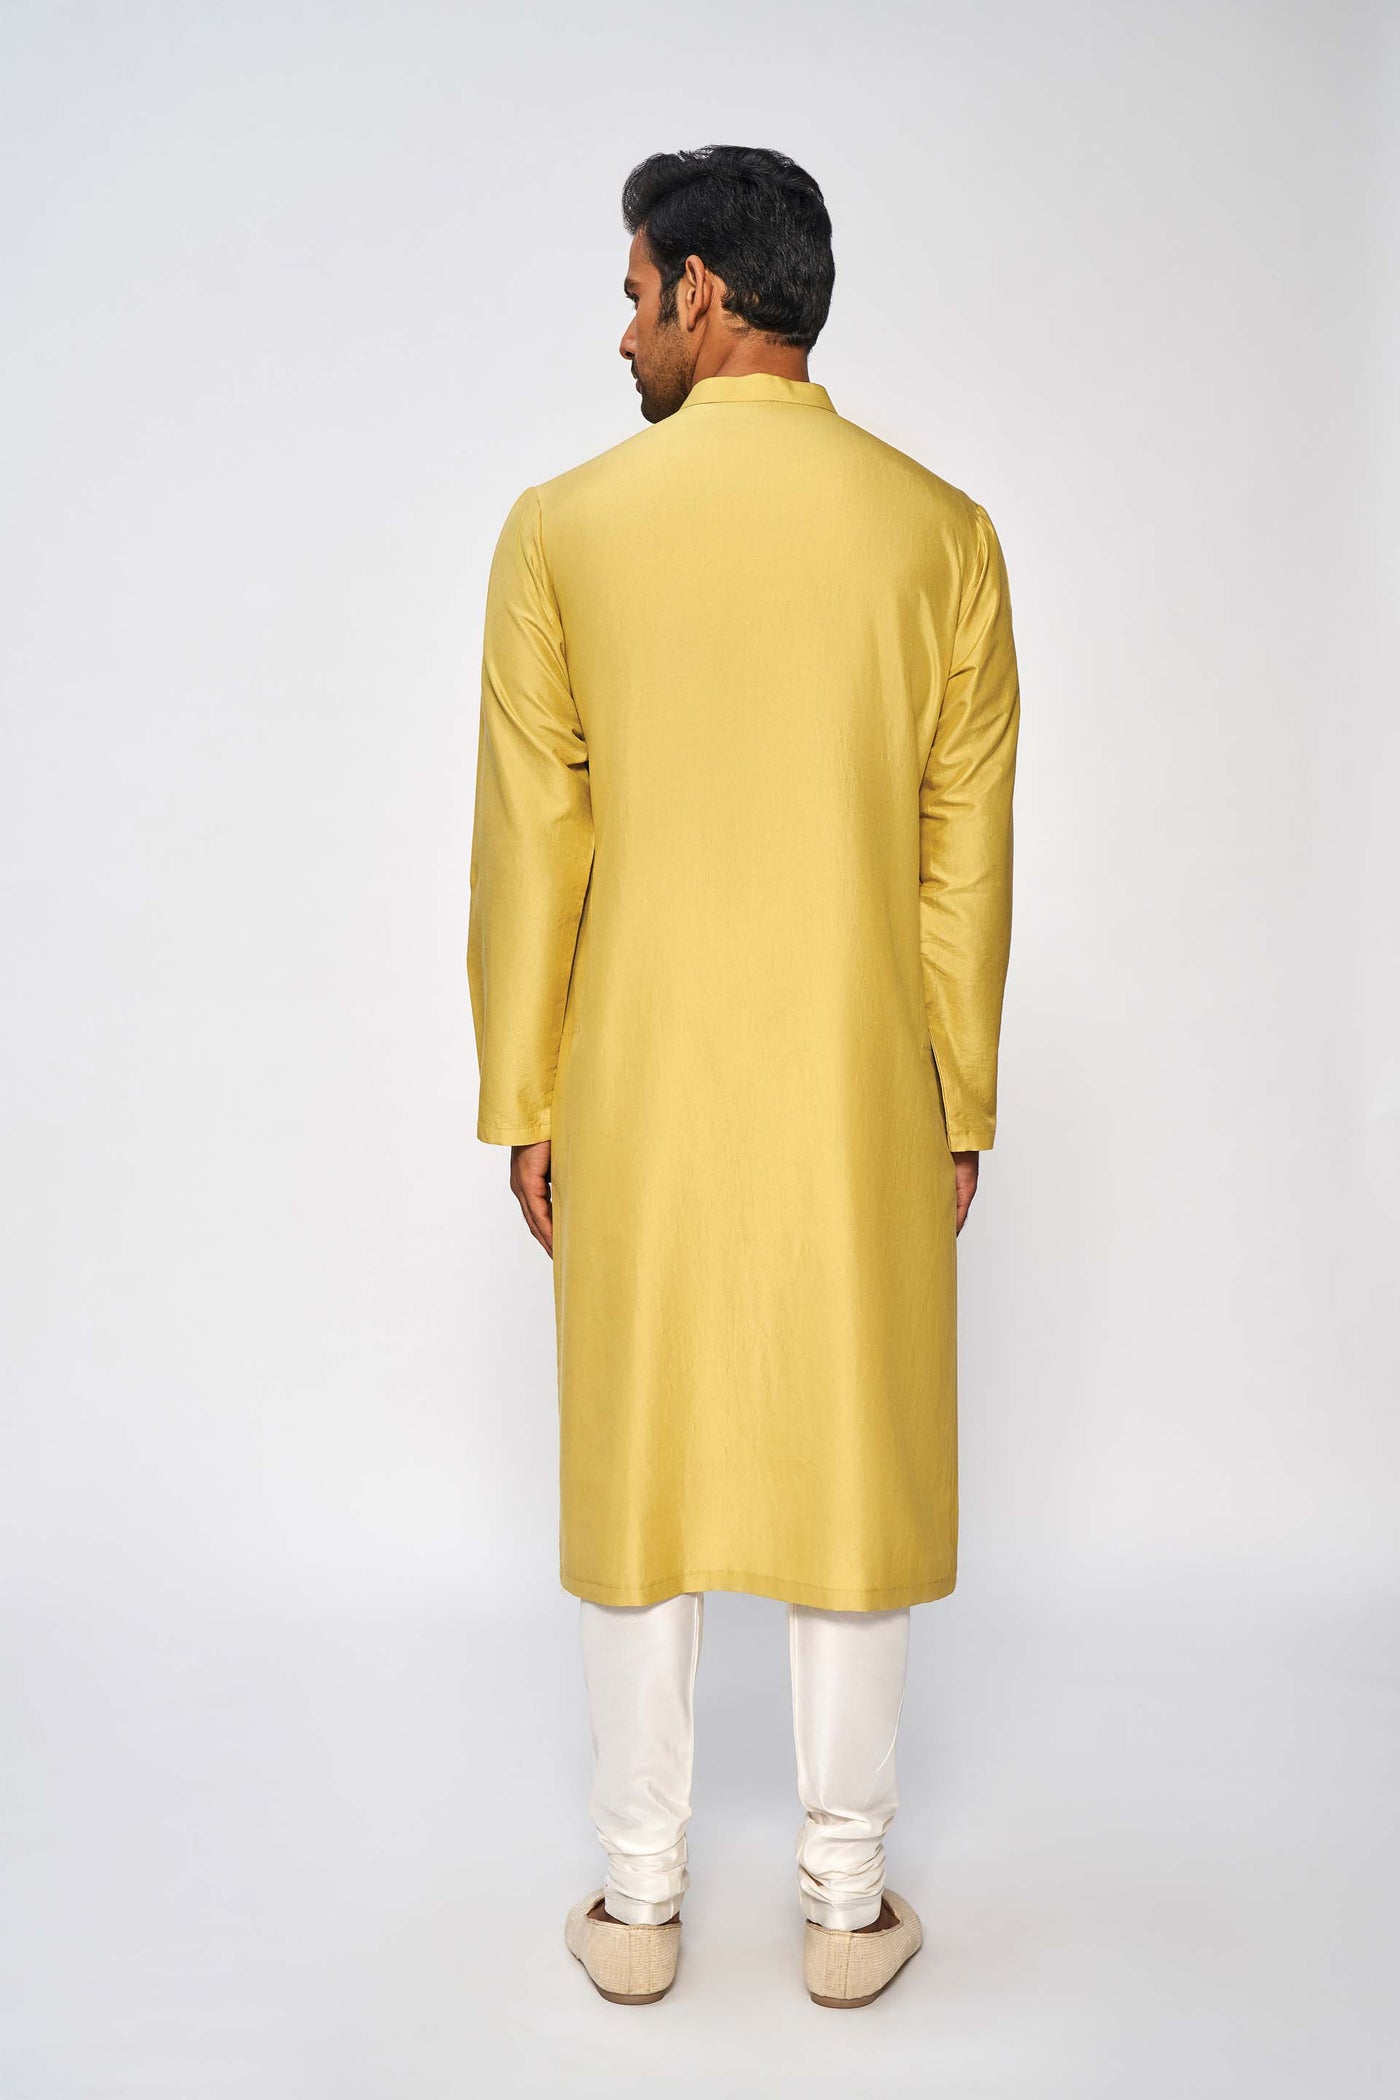 Anita Dongre menswear Ishir Kurta Mustard festive indian designer wear online shopping melange singapore